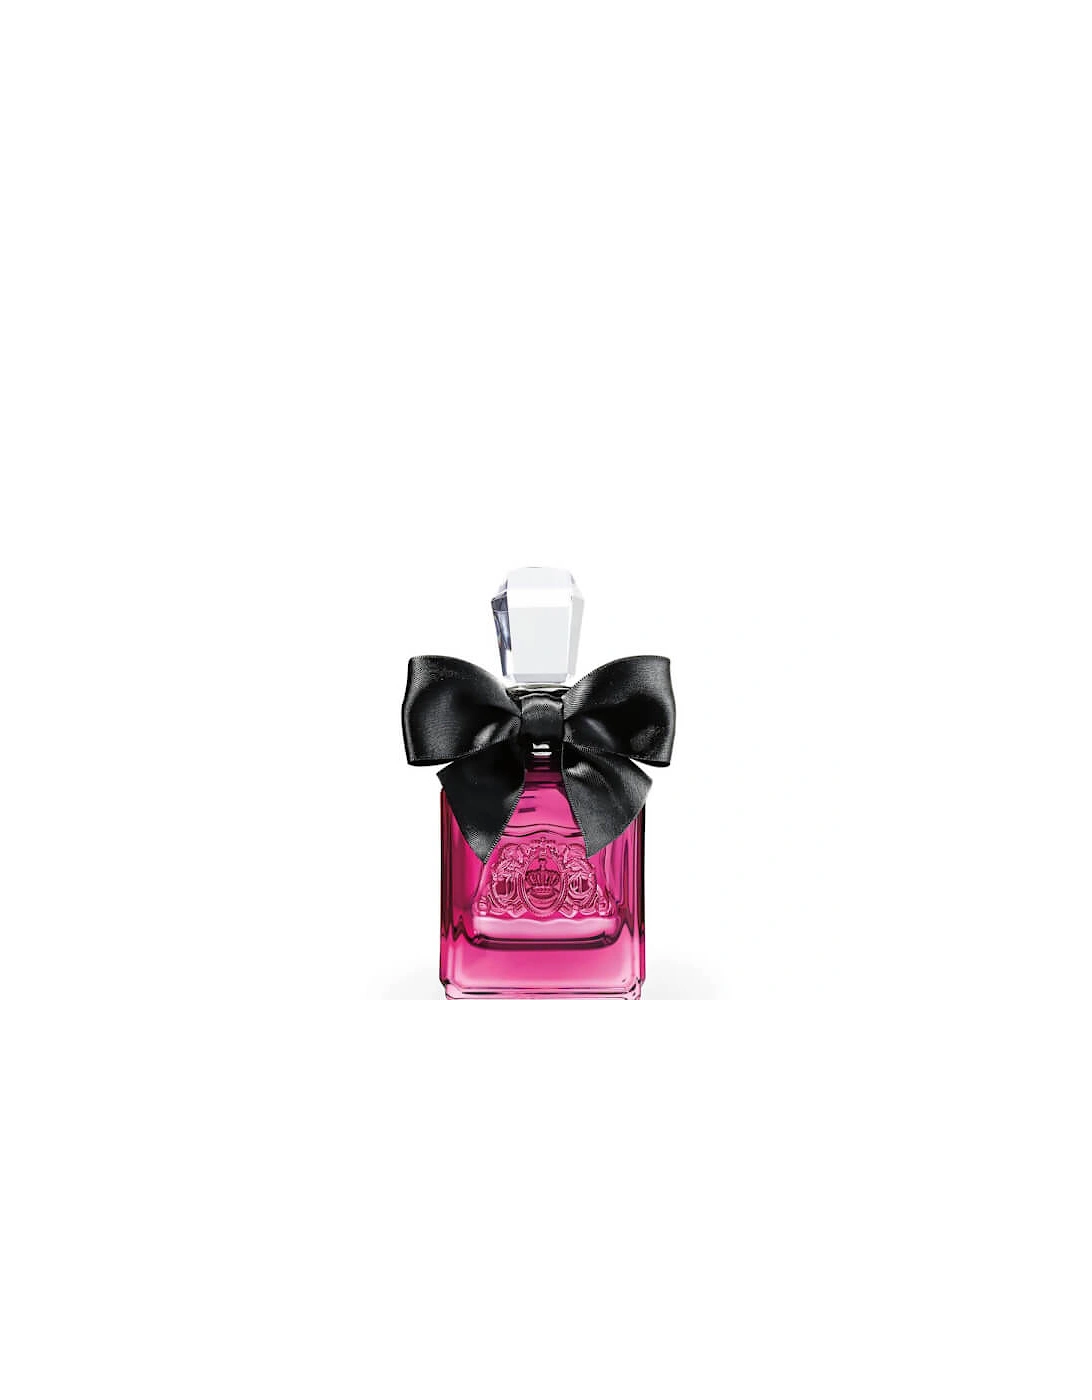 Viva Noir Eau de Parfum 50ml - Juicy Couture, 2 of 1